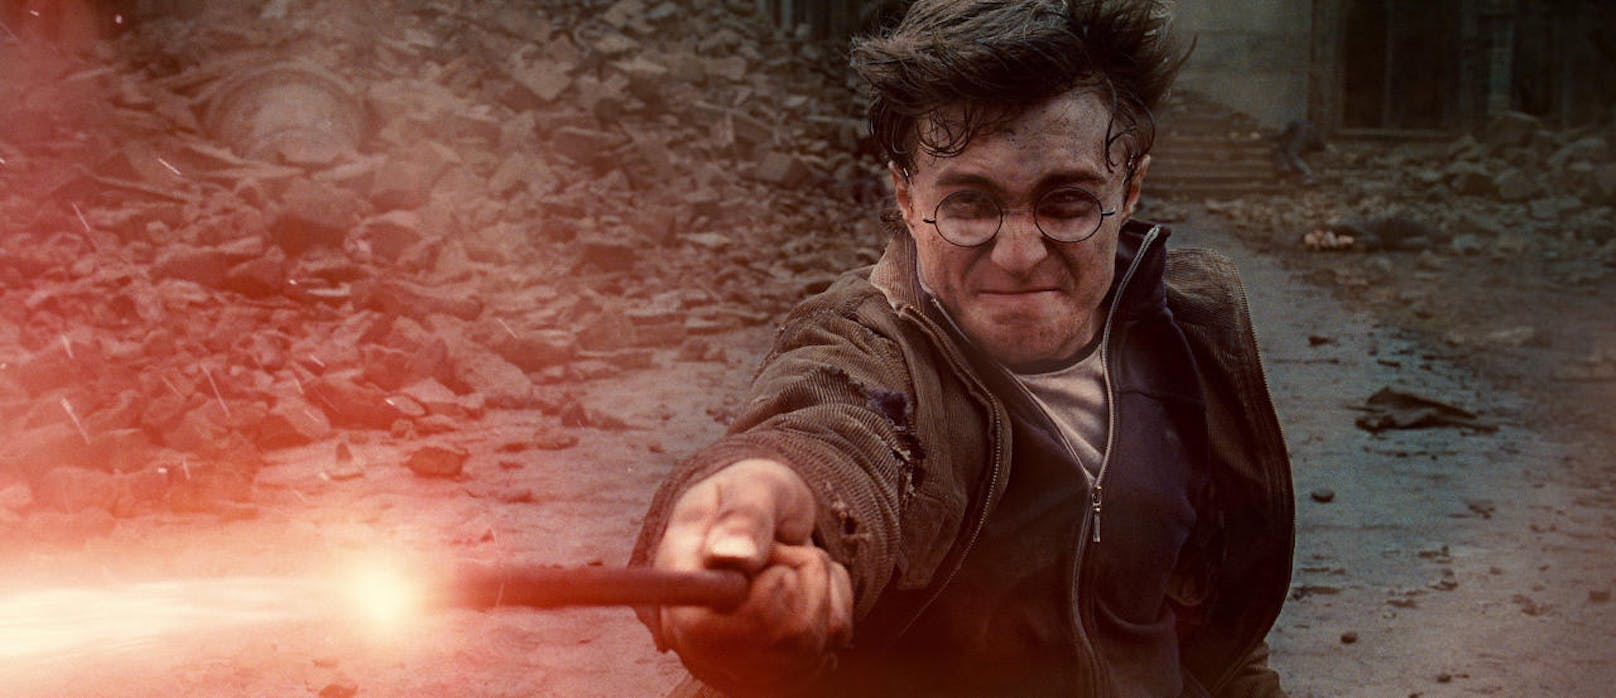 Warner Bros ist Produzent der "Harry Potter"-Filme.
/Ronald Grant / Mary Evans